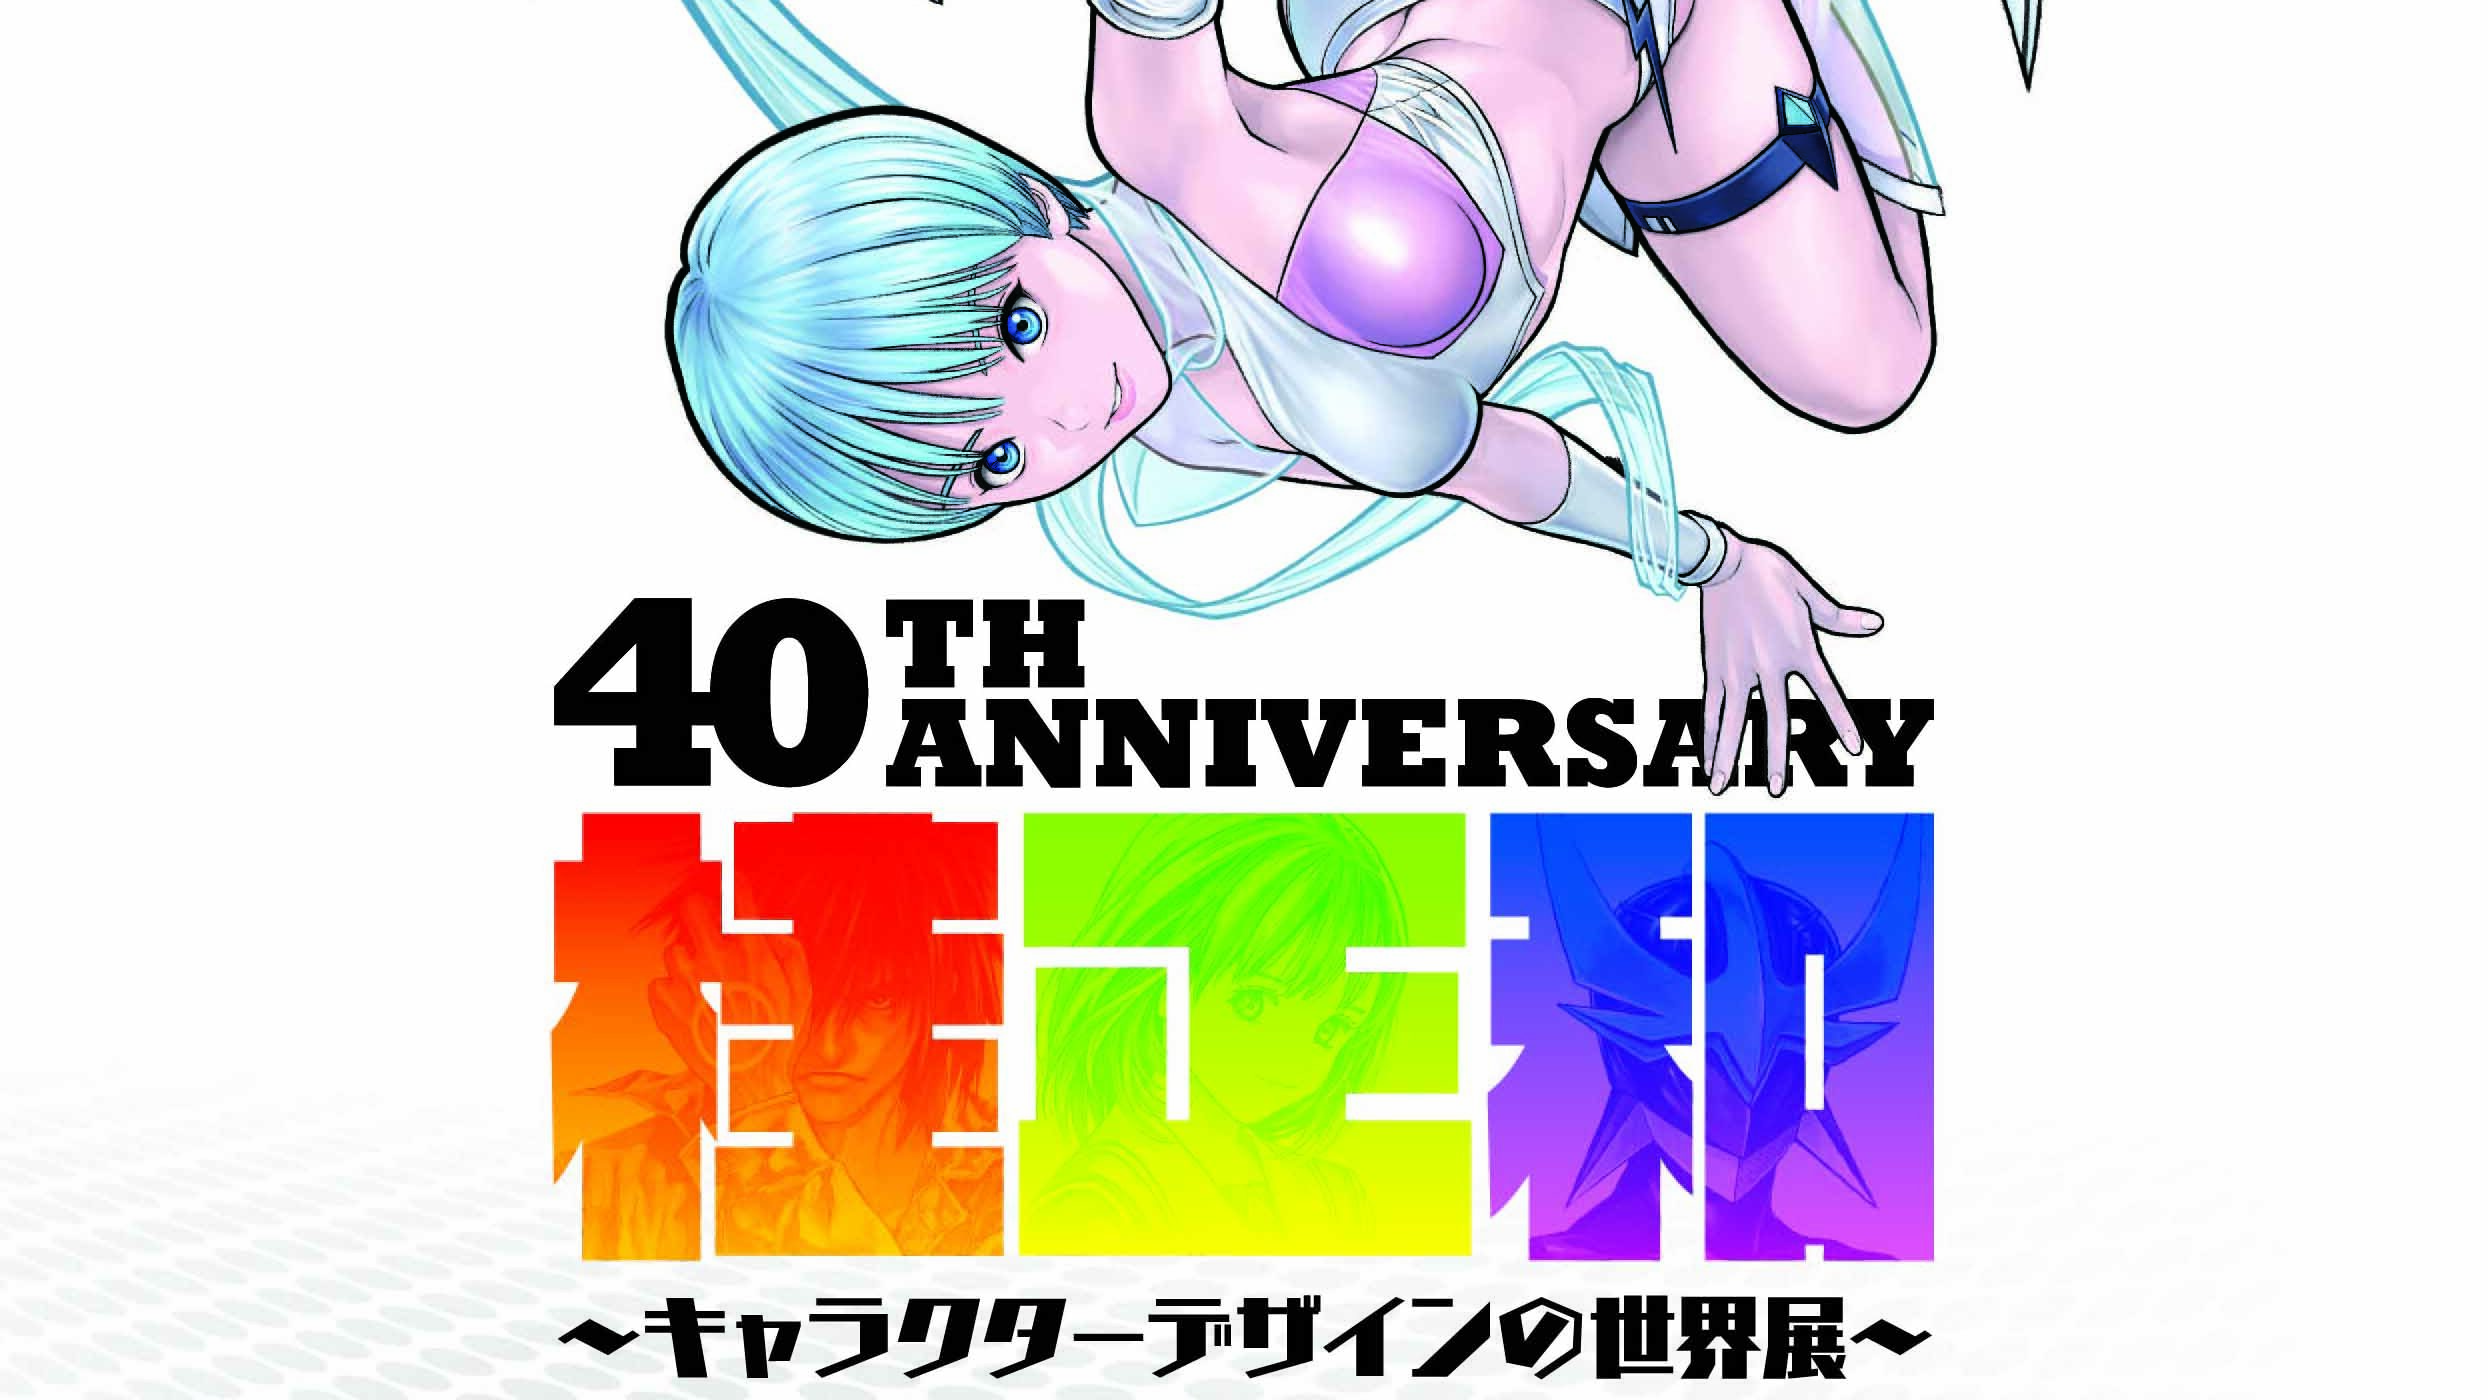 Masakazu Katsura Exhibixición 40 aniversario